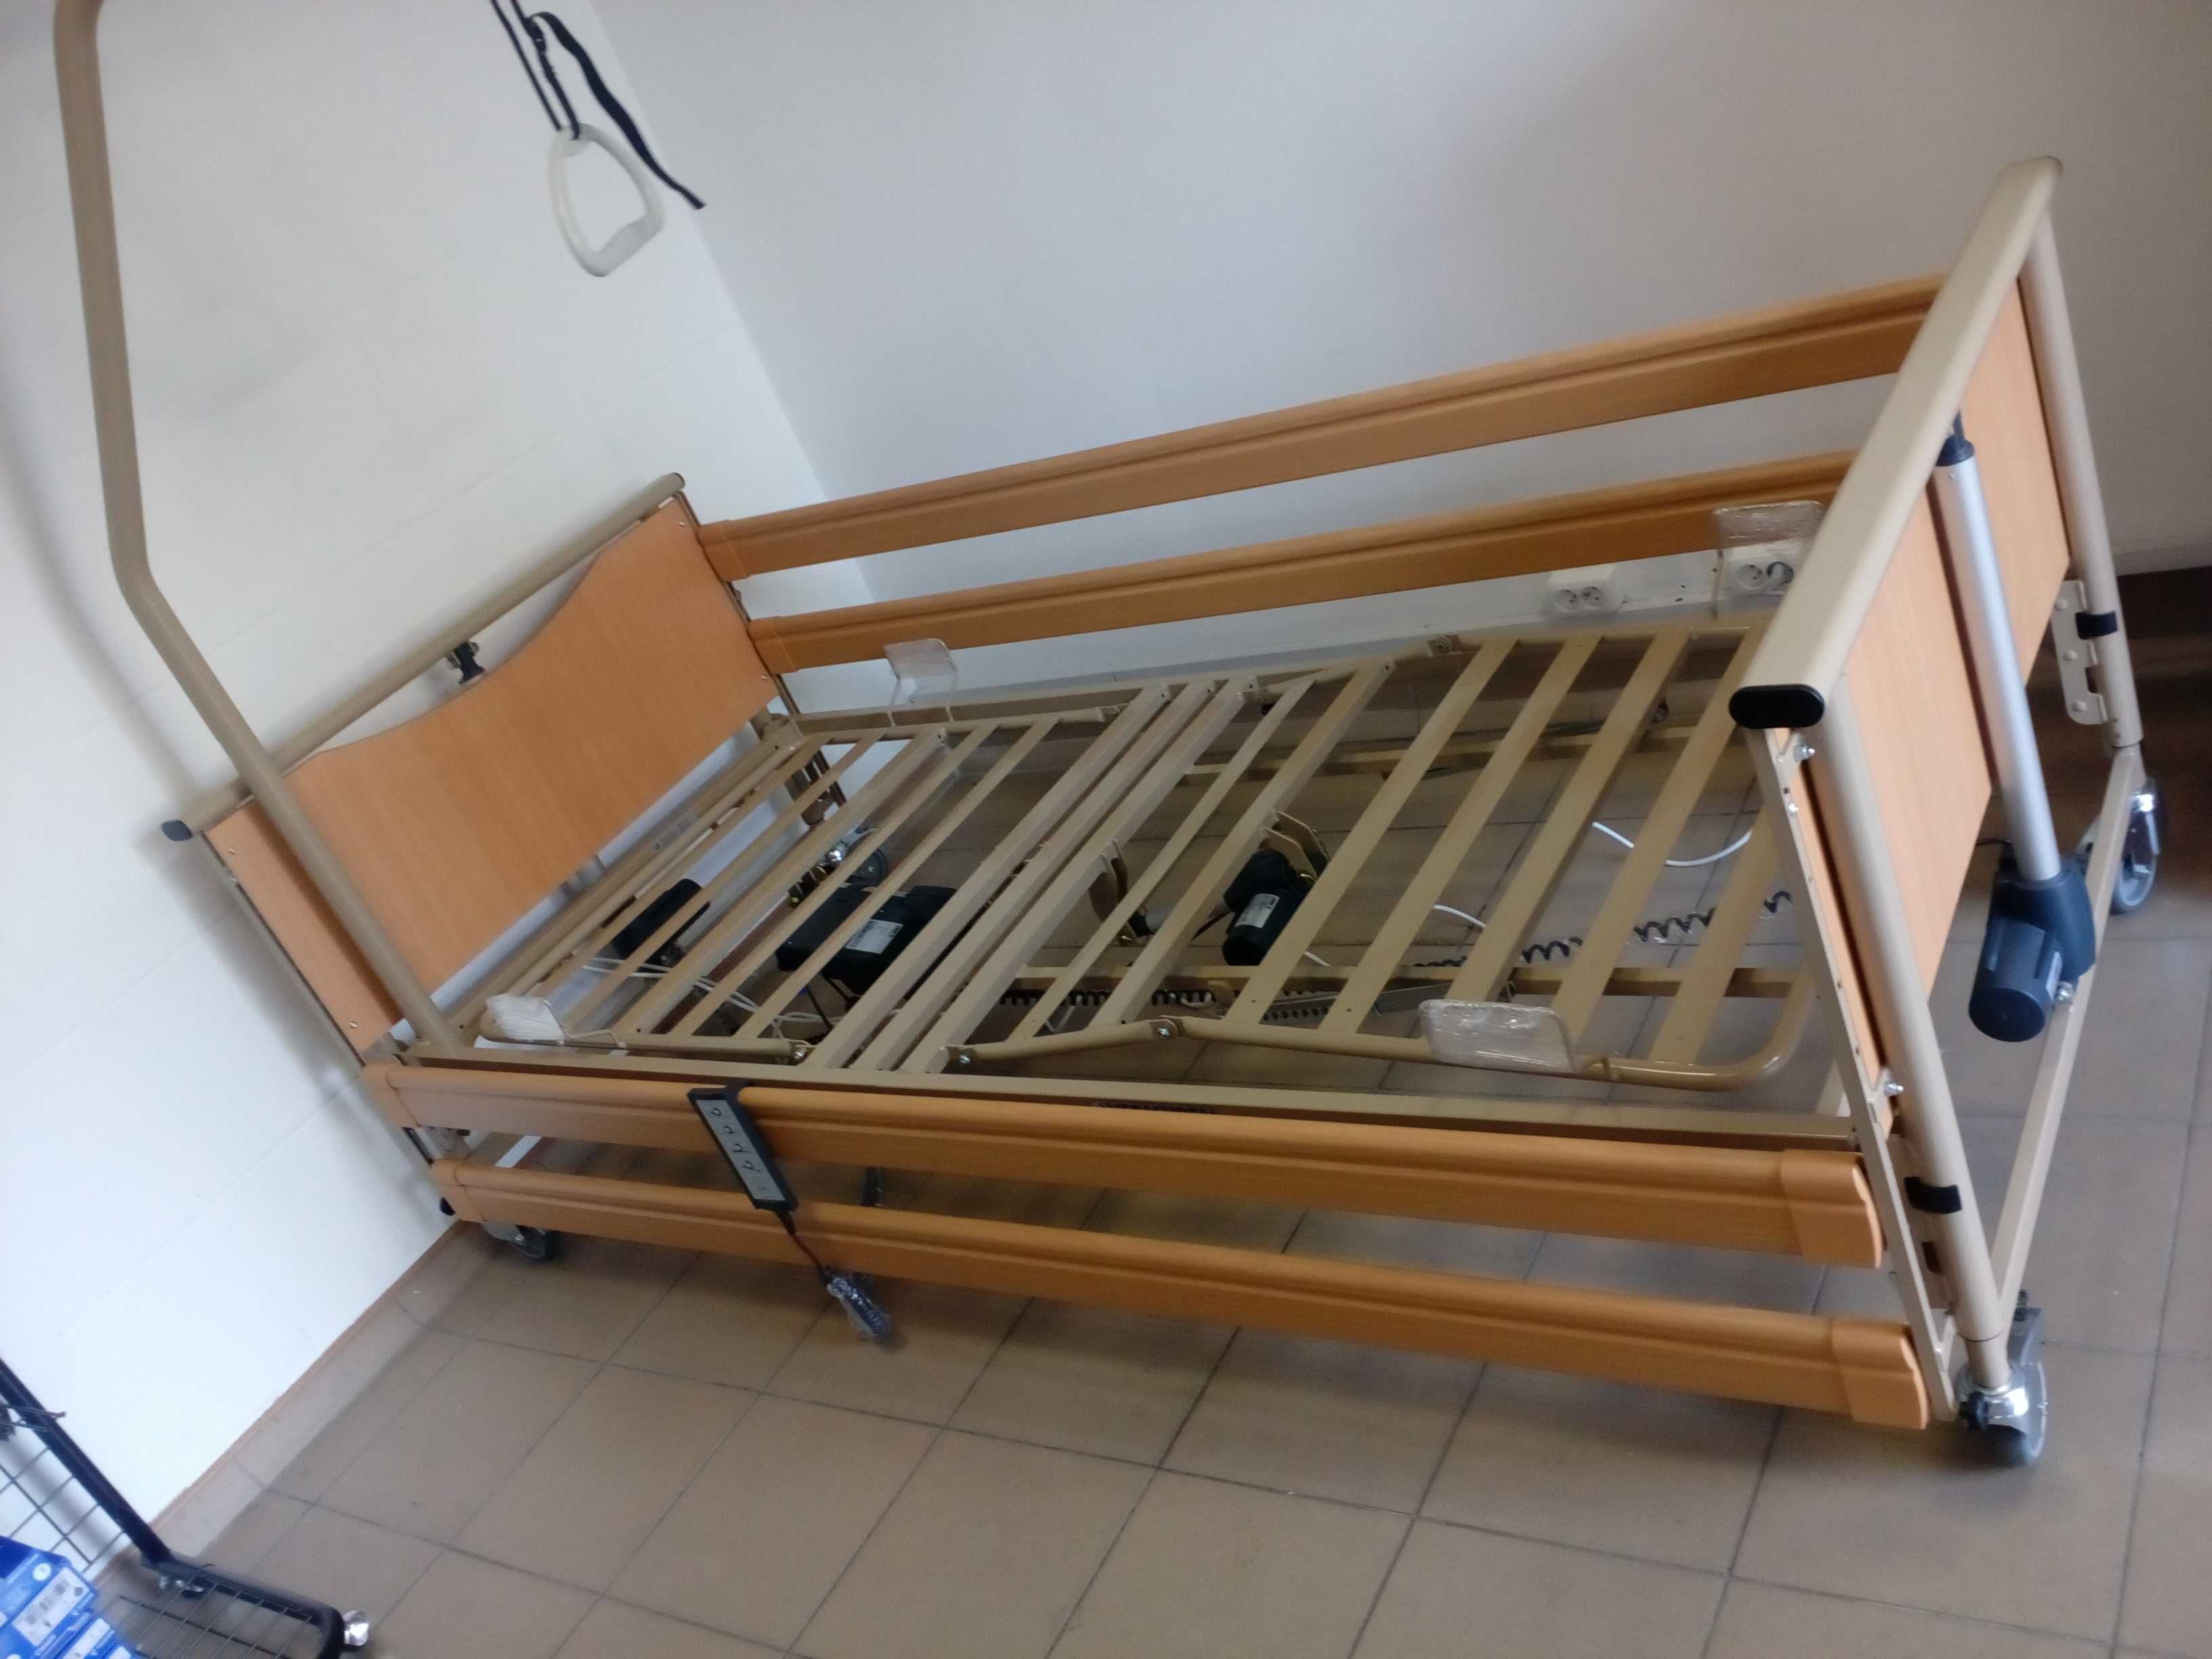 Nowe łóżko rehabilitacyjne dla z barierkami i pilotem Vermeiren.